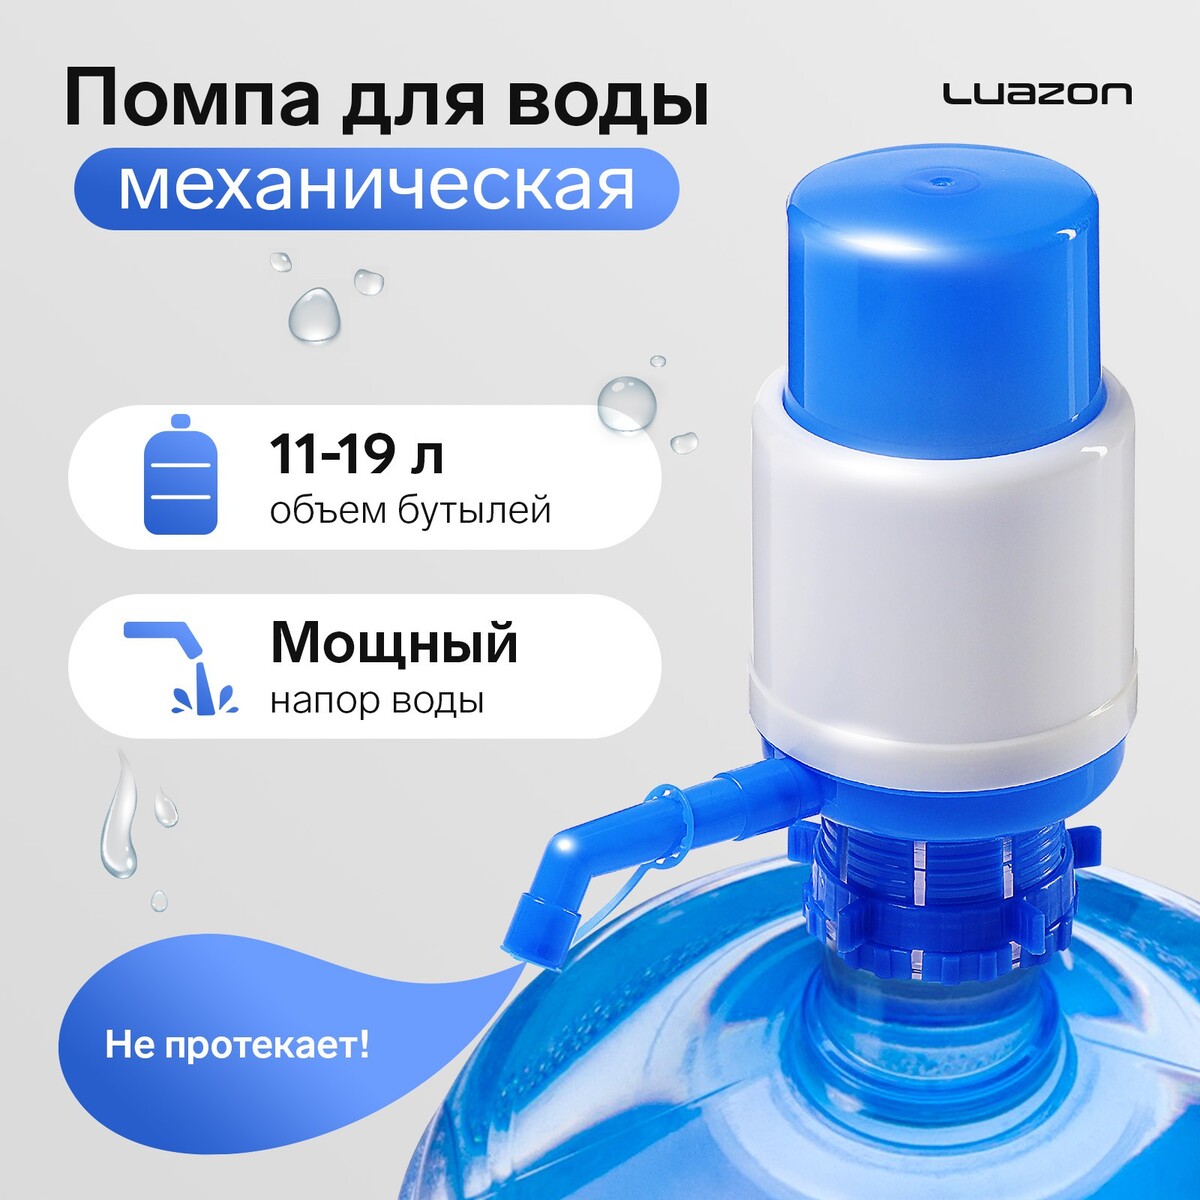 Помпа для воды luazon, механическая, средняя, под бутыль от 11 до 19 л, голубая помпа для воды luazon lwp 08 электрическая 5 вт 1 2 л мин 800 мач акб